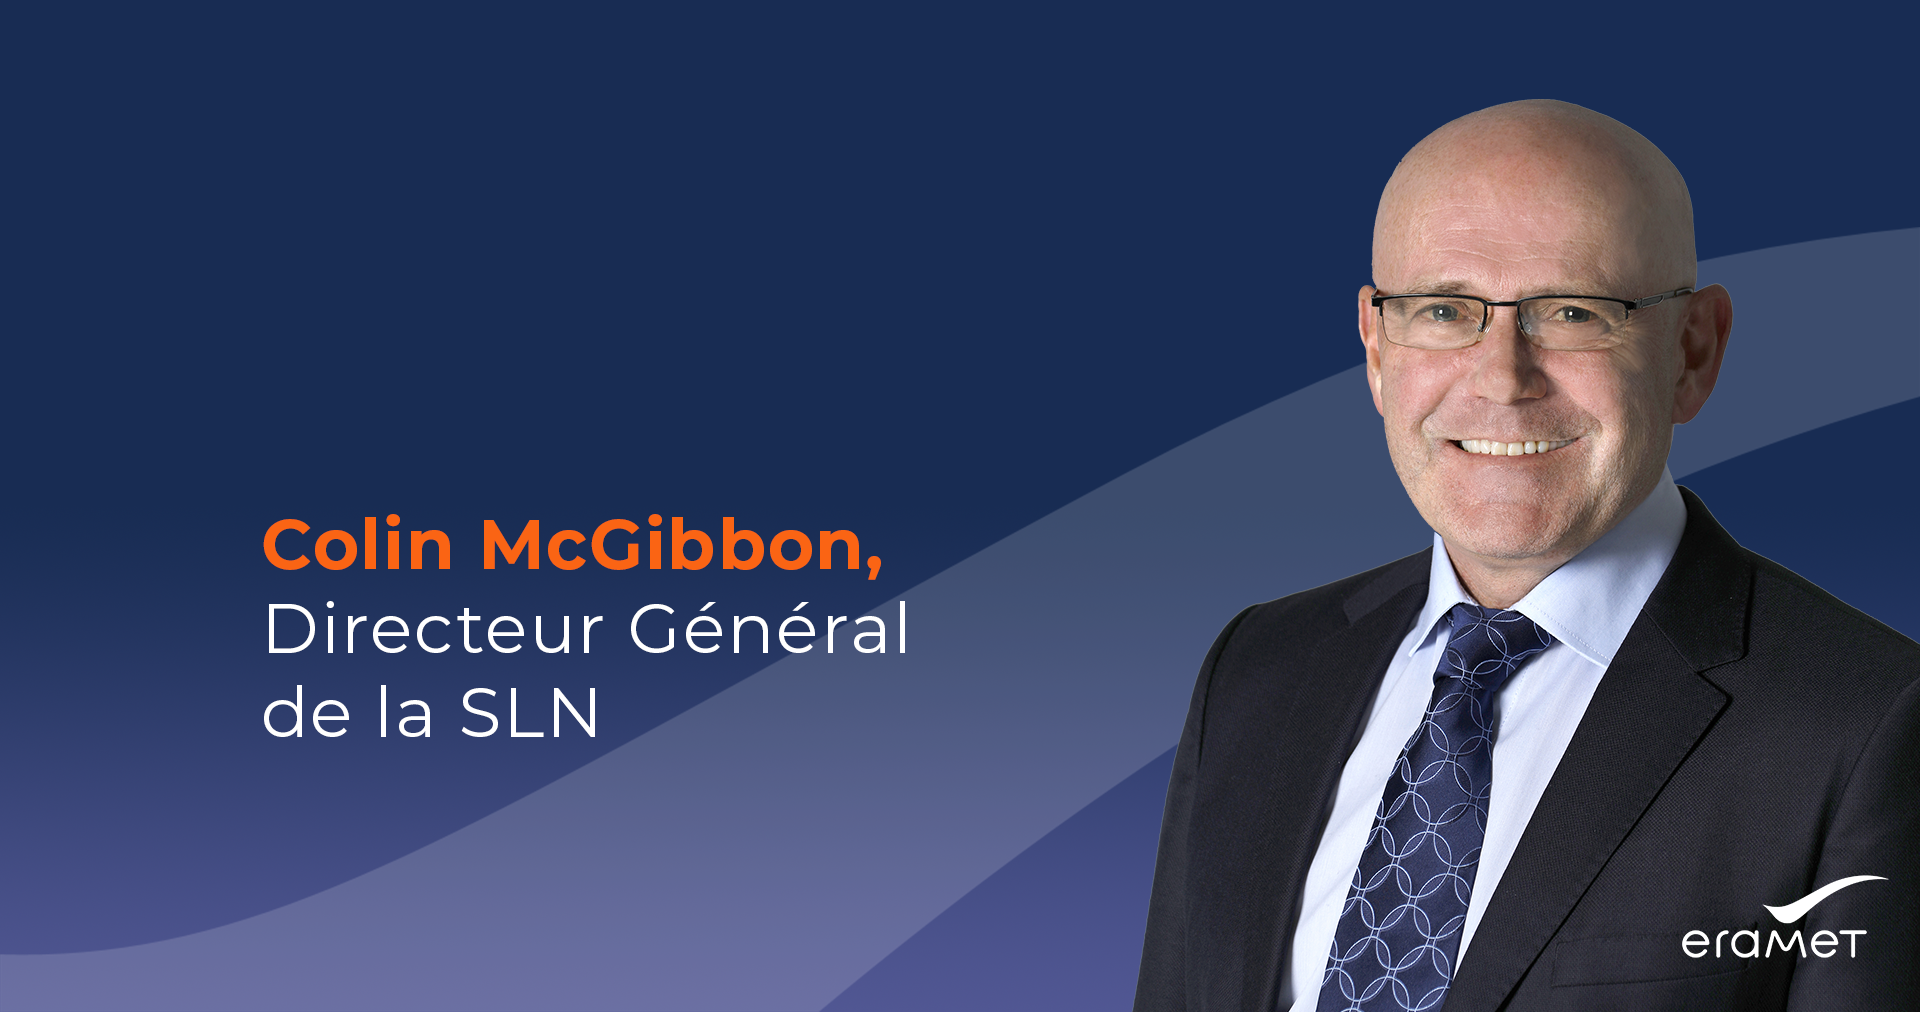 Nickel calédonien : Le Conseil d’administration de la SLN acte la nomination de Colin McGibbon au poste de Directeur général